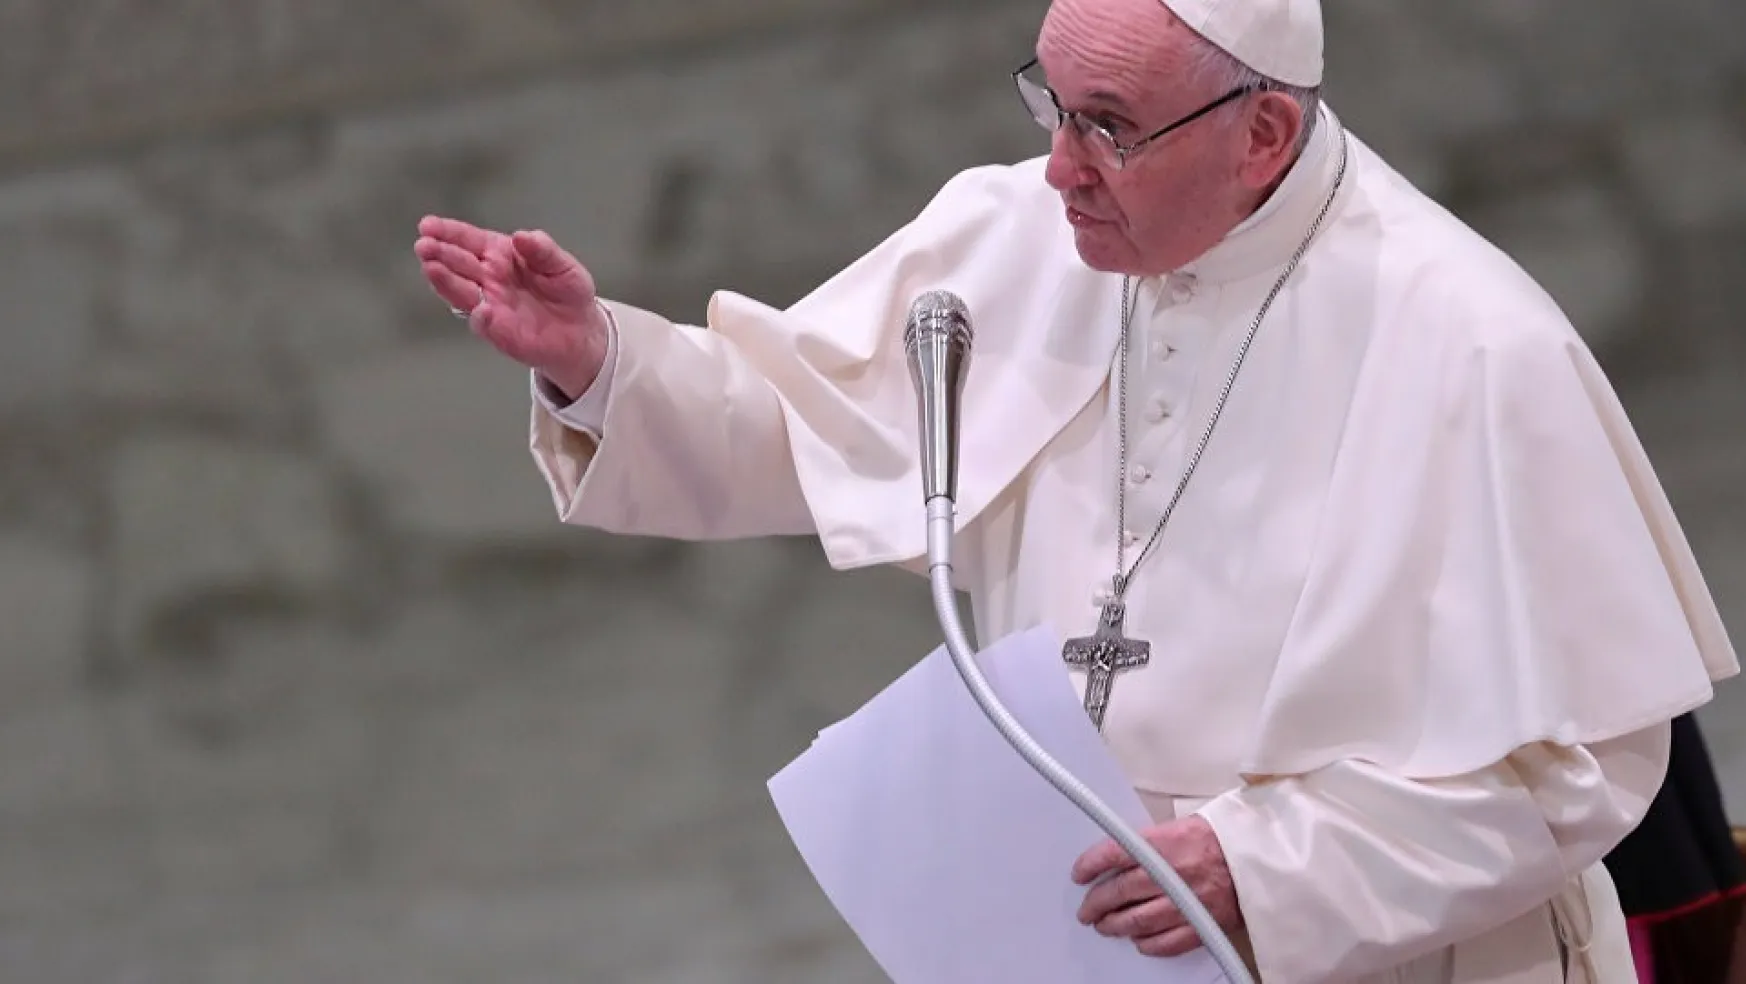 Papa'dan Berberlere: Dedikodu Yapmayın